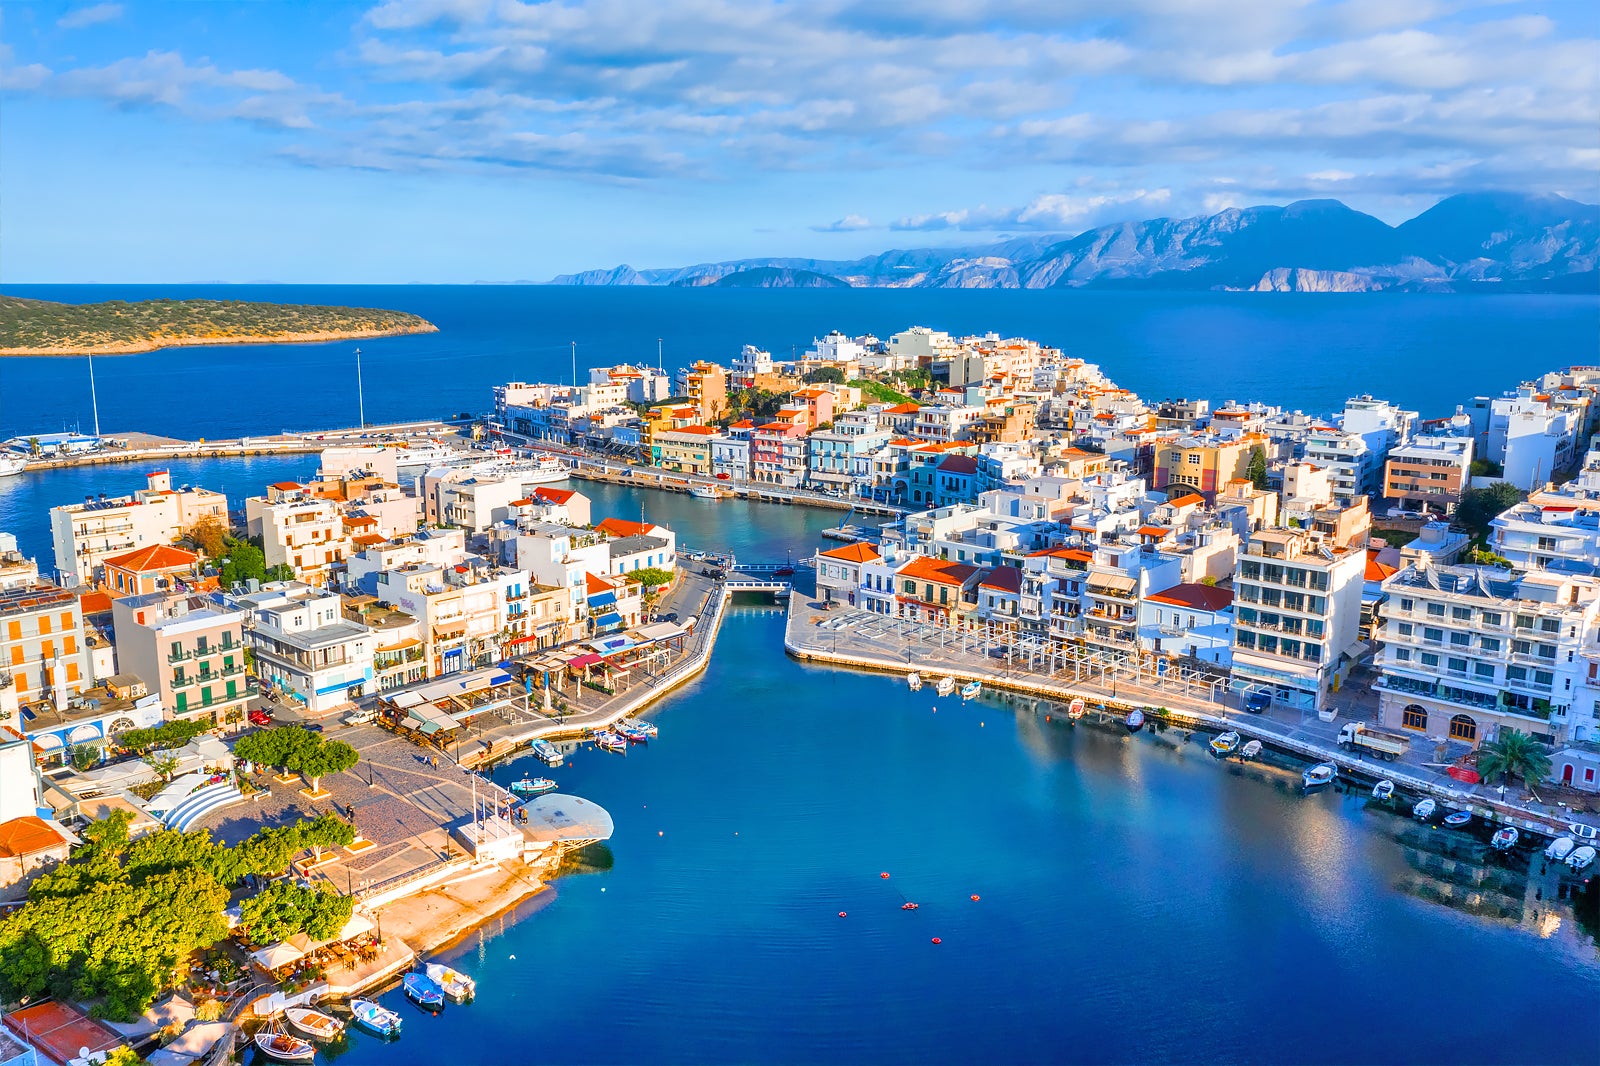 Bảy hòn đảo của Hy Lạp lọt top 20 hòn đảo hàng đầu của châu Âu